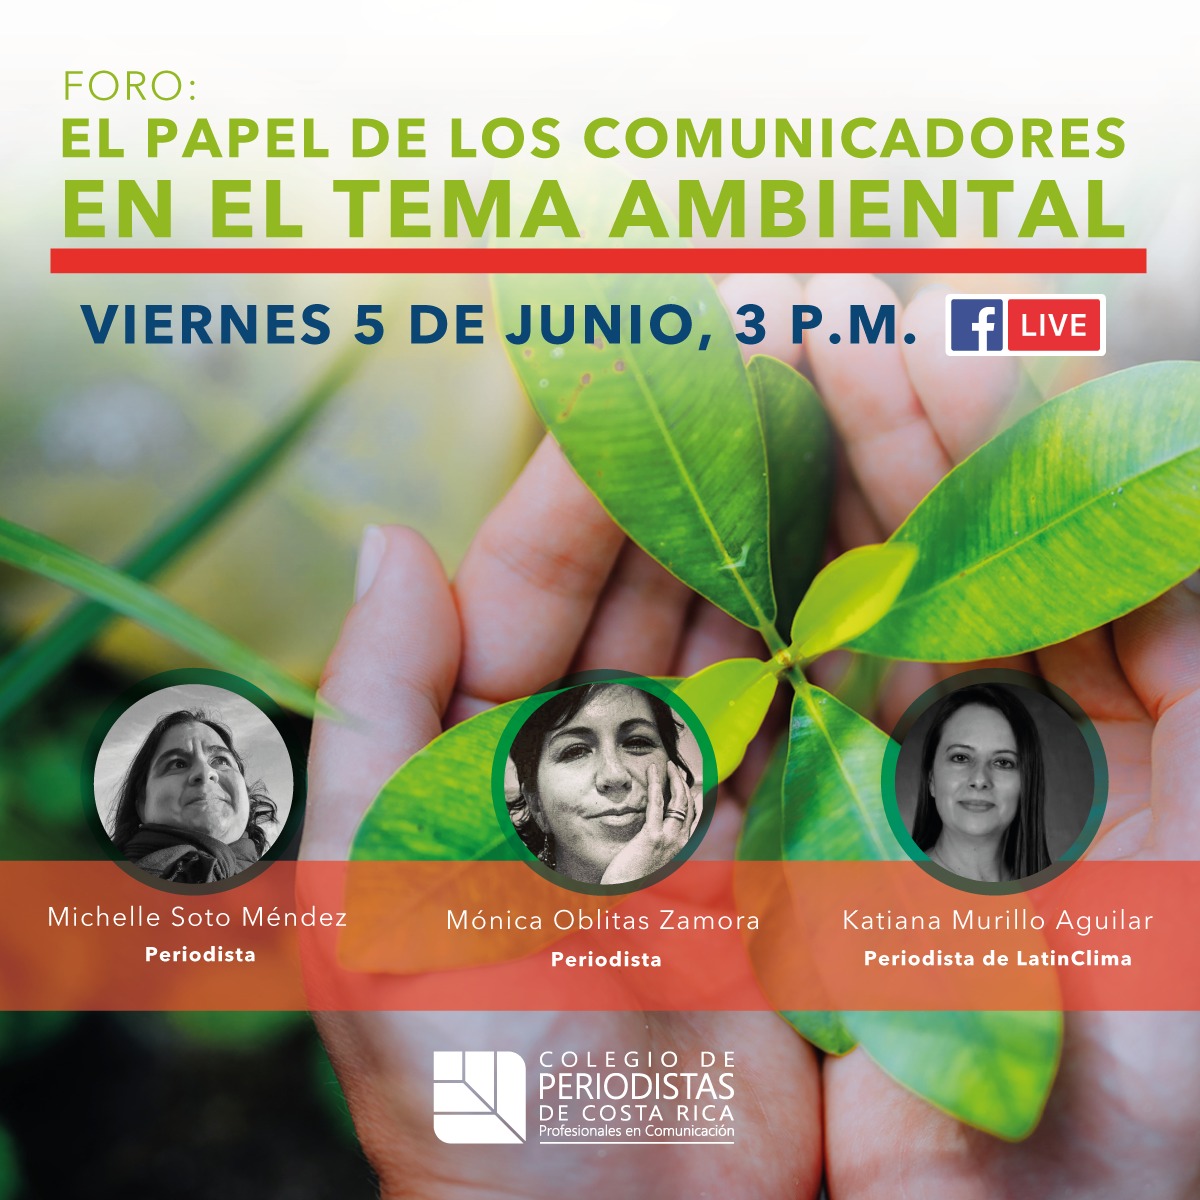 El @ColperCR me invitó a participar en un foro sobre periodismo ambiental en el marco del #DiaMundialDelMedioAmbiente 

Compartiré panel con dos grandes periodistas: @monicaoblitas de @EditalBolivia y @Katianacr de @LatinClima  

Quedan invitados e invitadas.